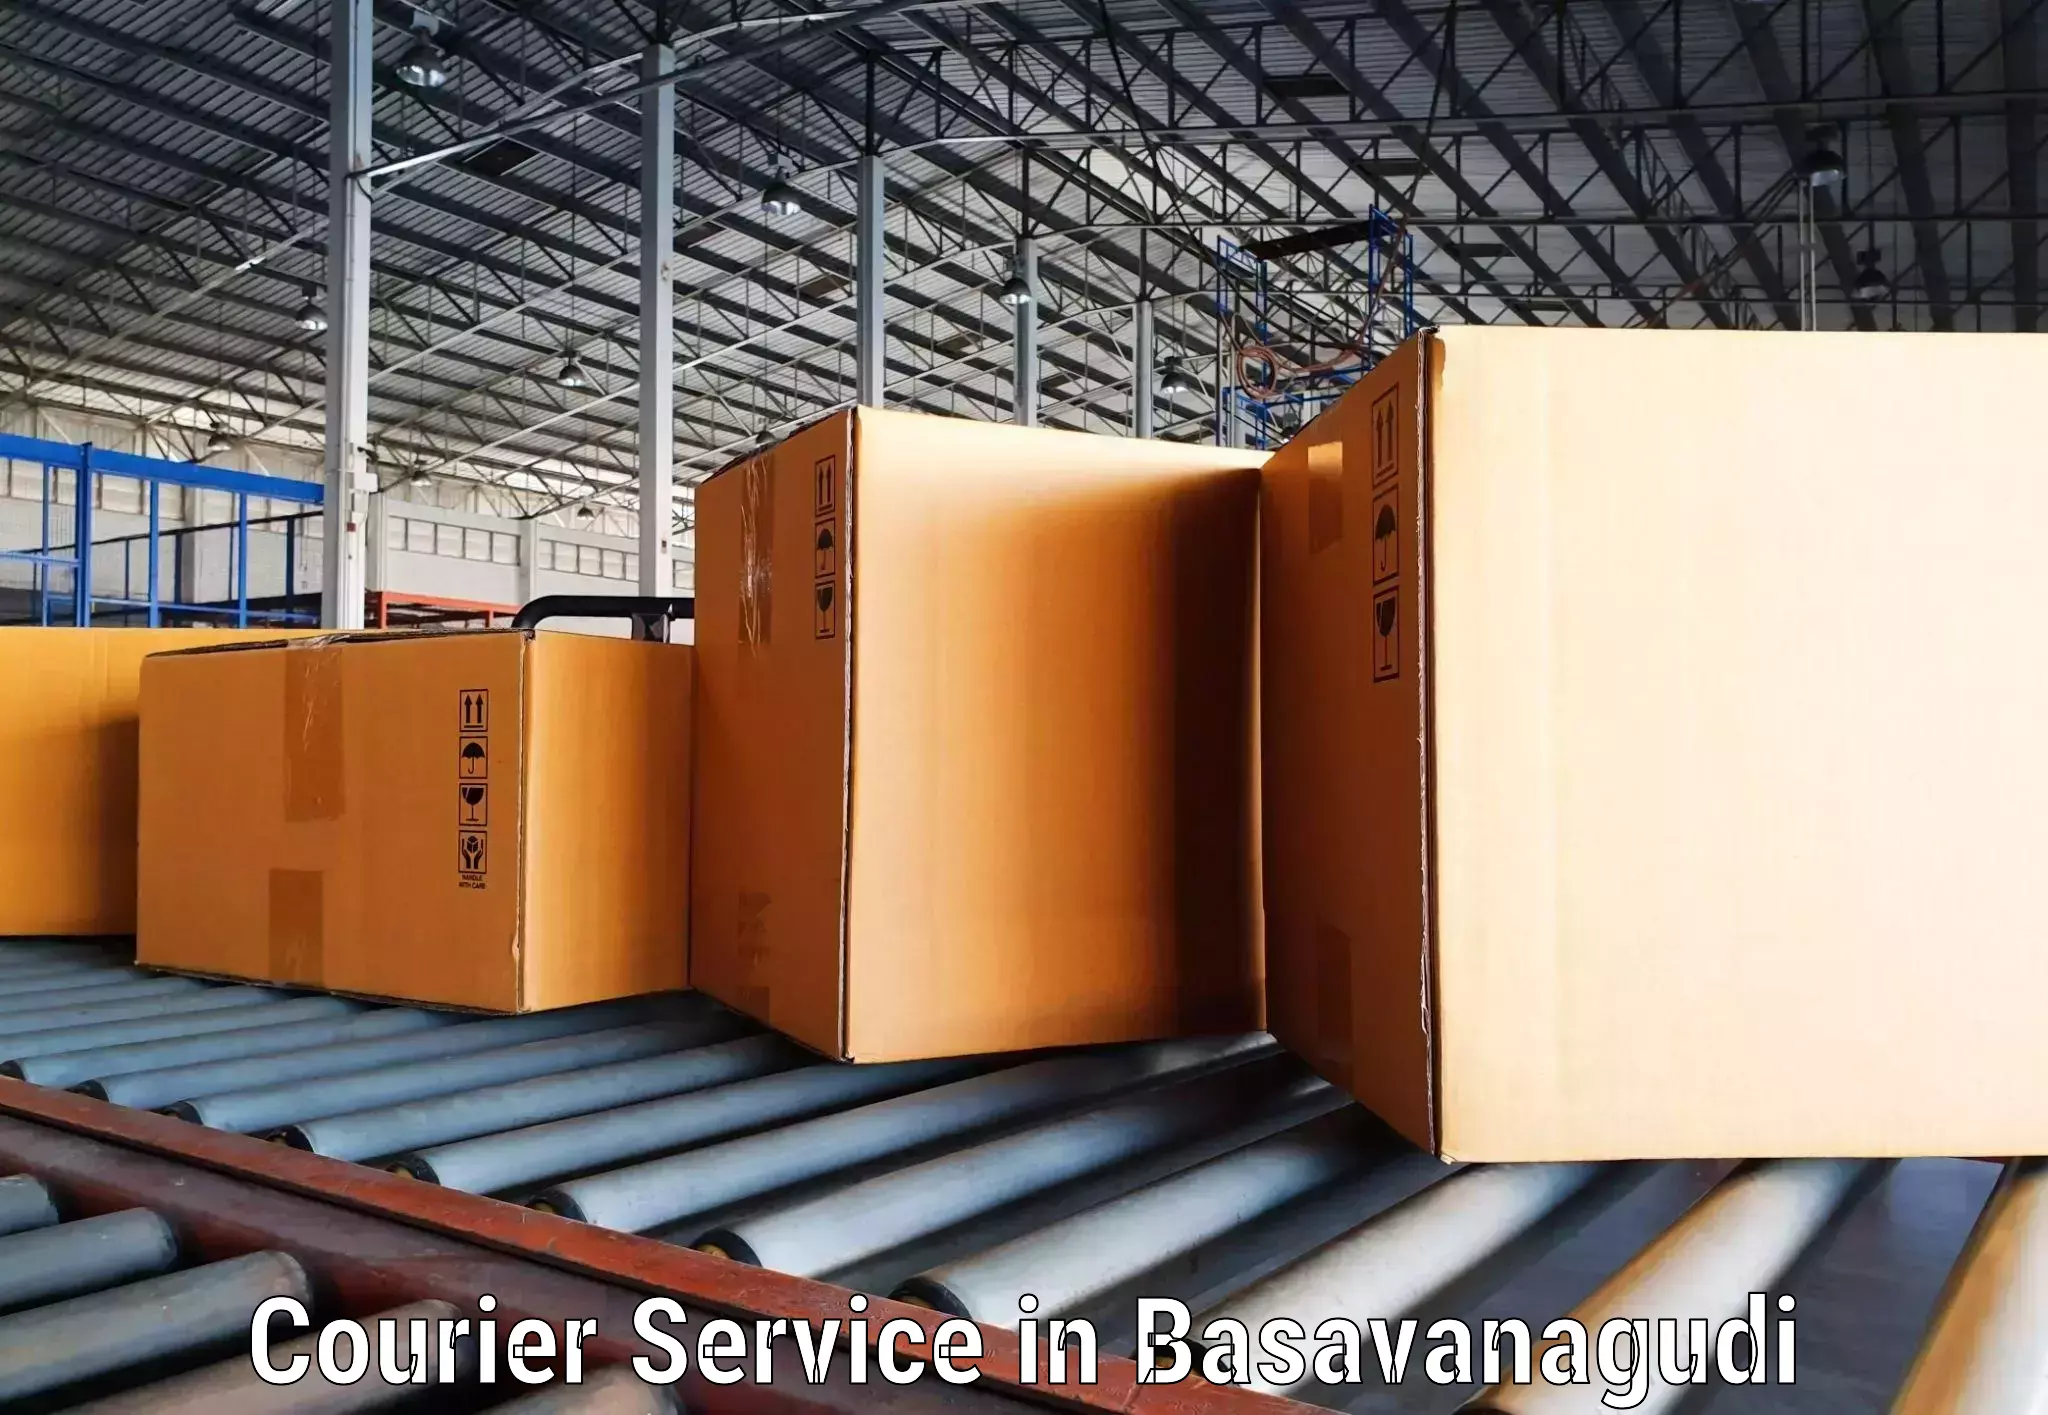 High-priority parcel service in Basavanagudi